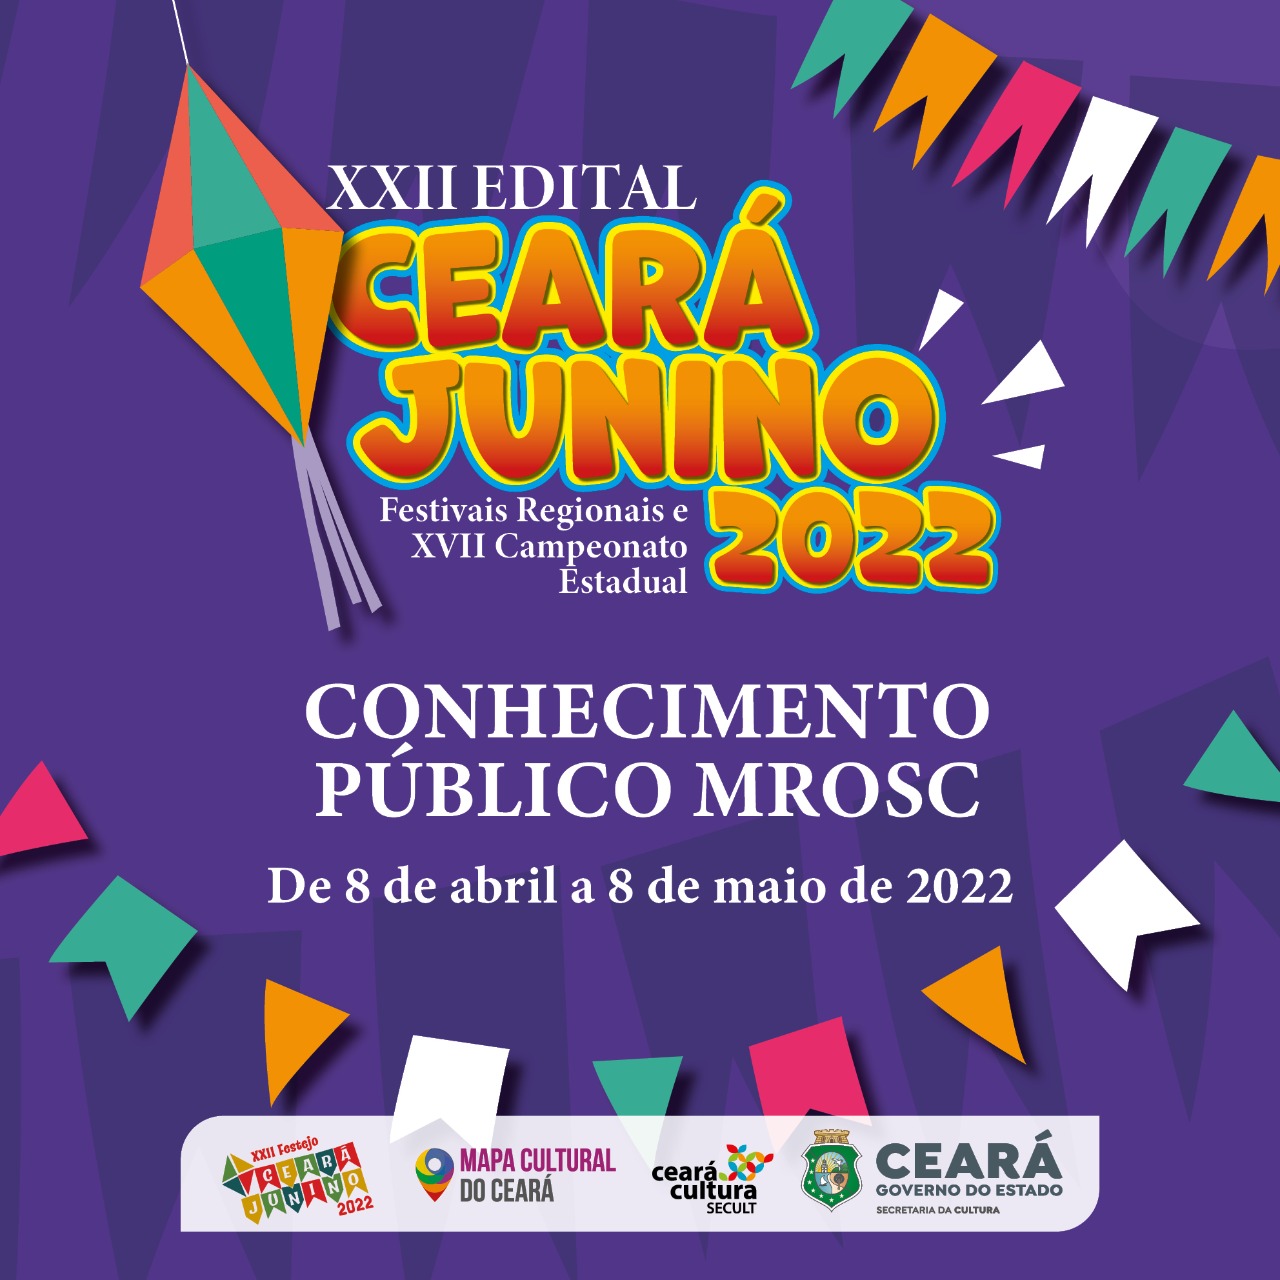 Secult torna público o XXII Edital Ceará Junino para os Festivais Regionais e XVII Campeonato Estadual Festejo Ceará Junino 2022